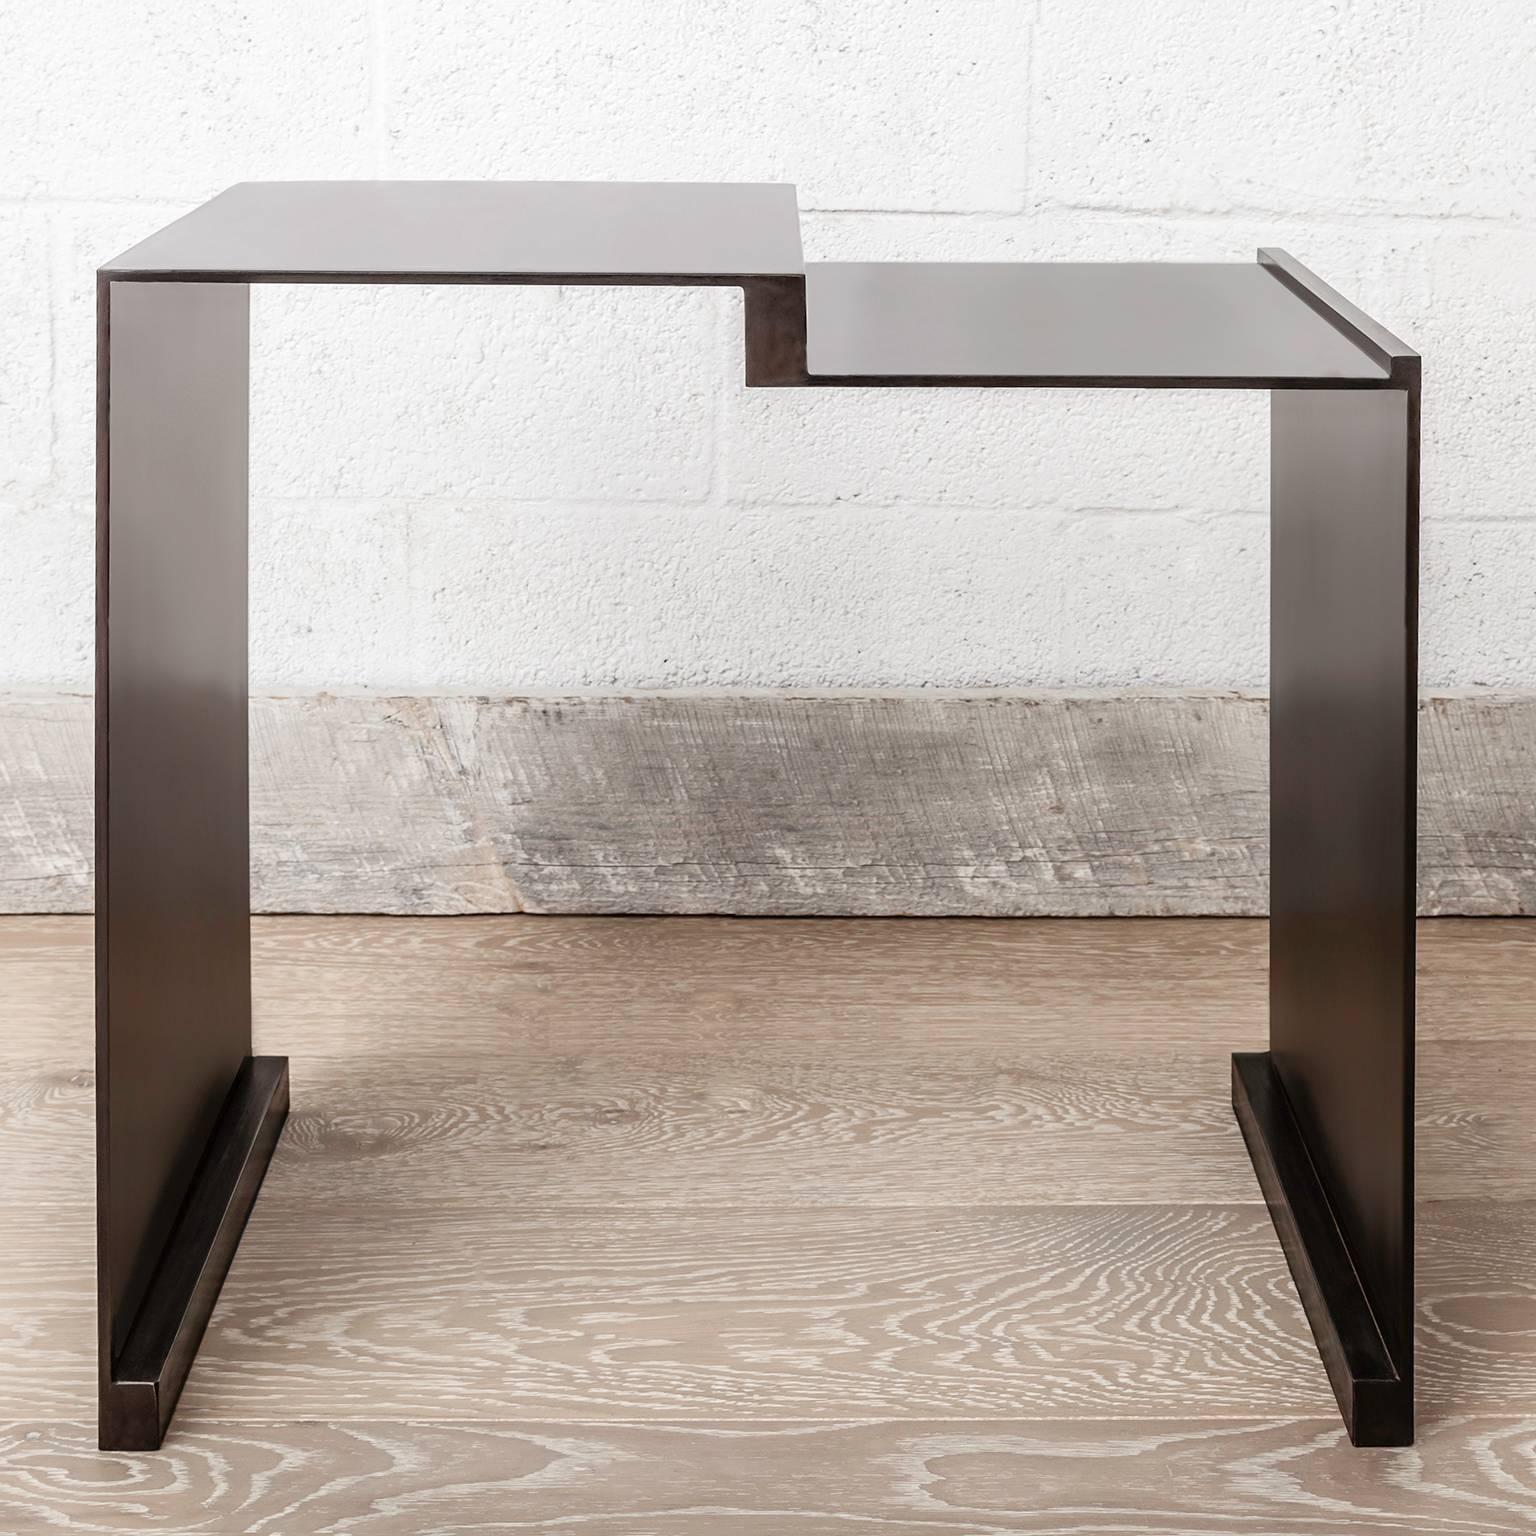 La table d'appoint Roque évoque une élégance moderne et chaleureuse avec des lignes simples et des matériaux solides. La structure du corps est composée d'une plaque d'acier noirci en  divers segments qui créent une forme sculpturale minimaliste. Il